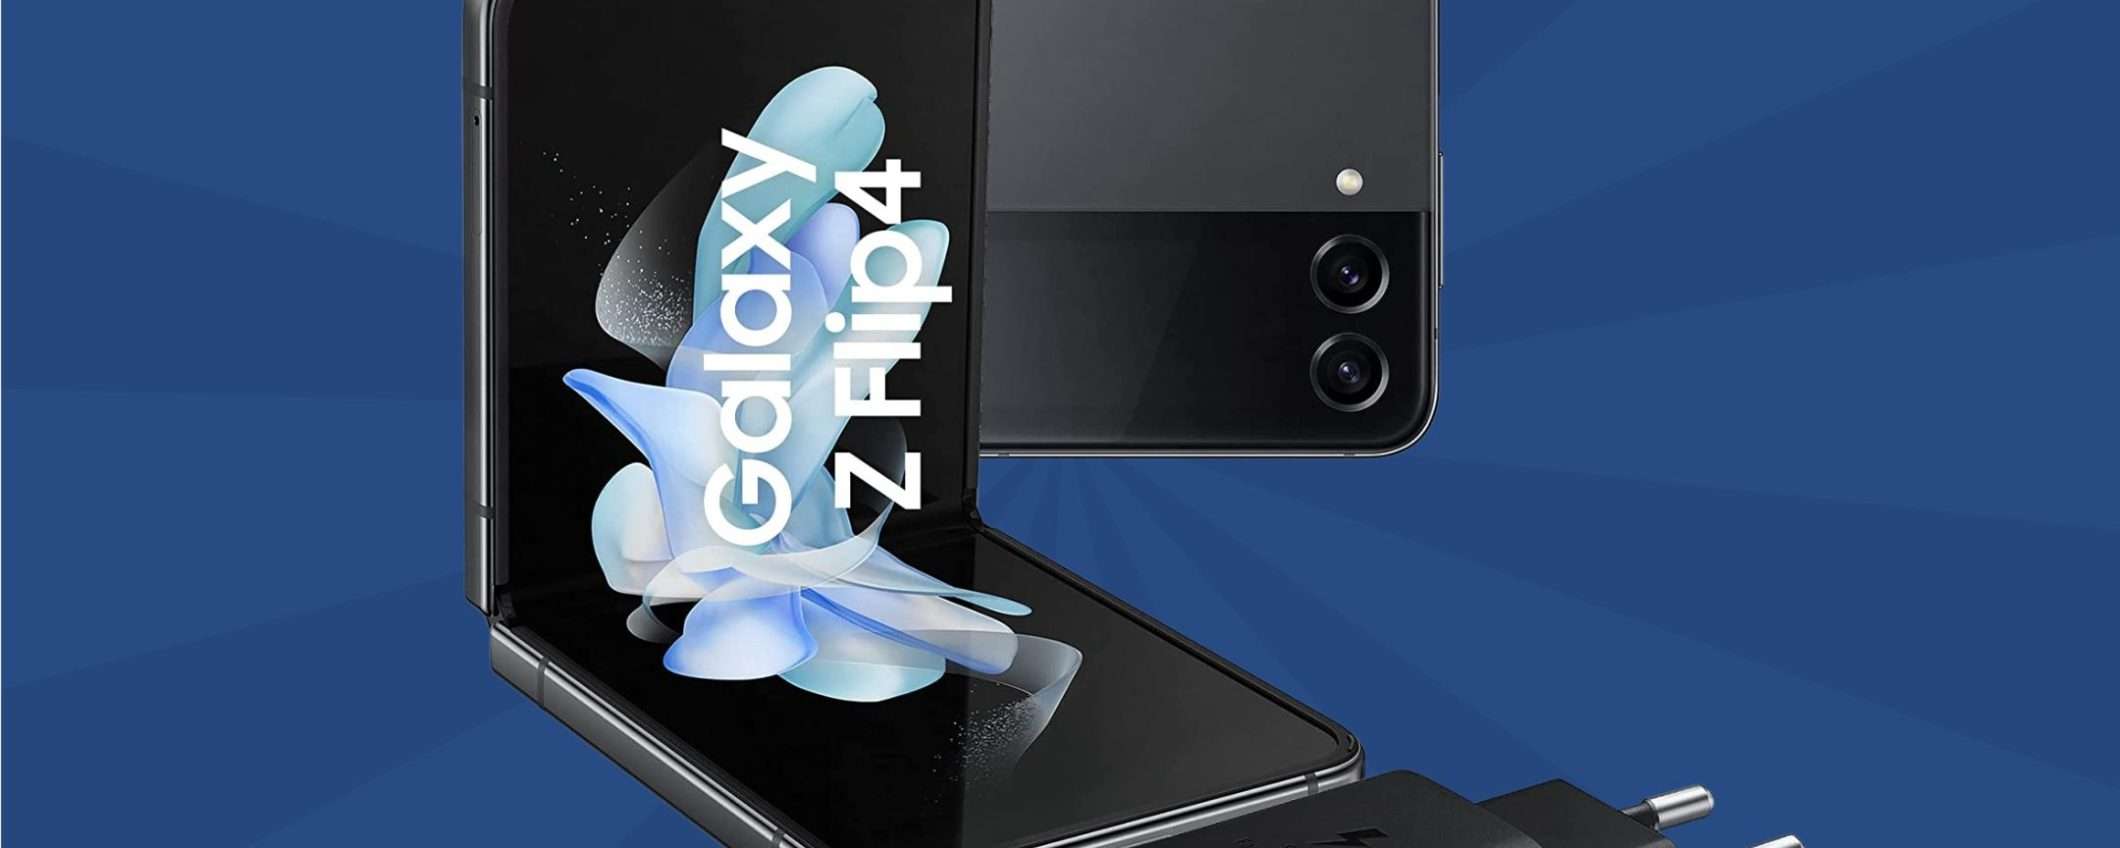 Samsung Galaxy Z Flip 4 a 679€ su Amazon: come si fa a RESISTERE? (-470€)